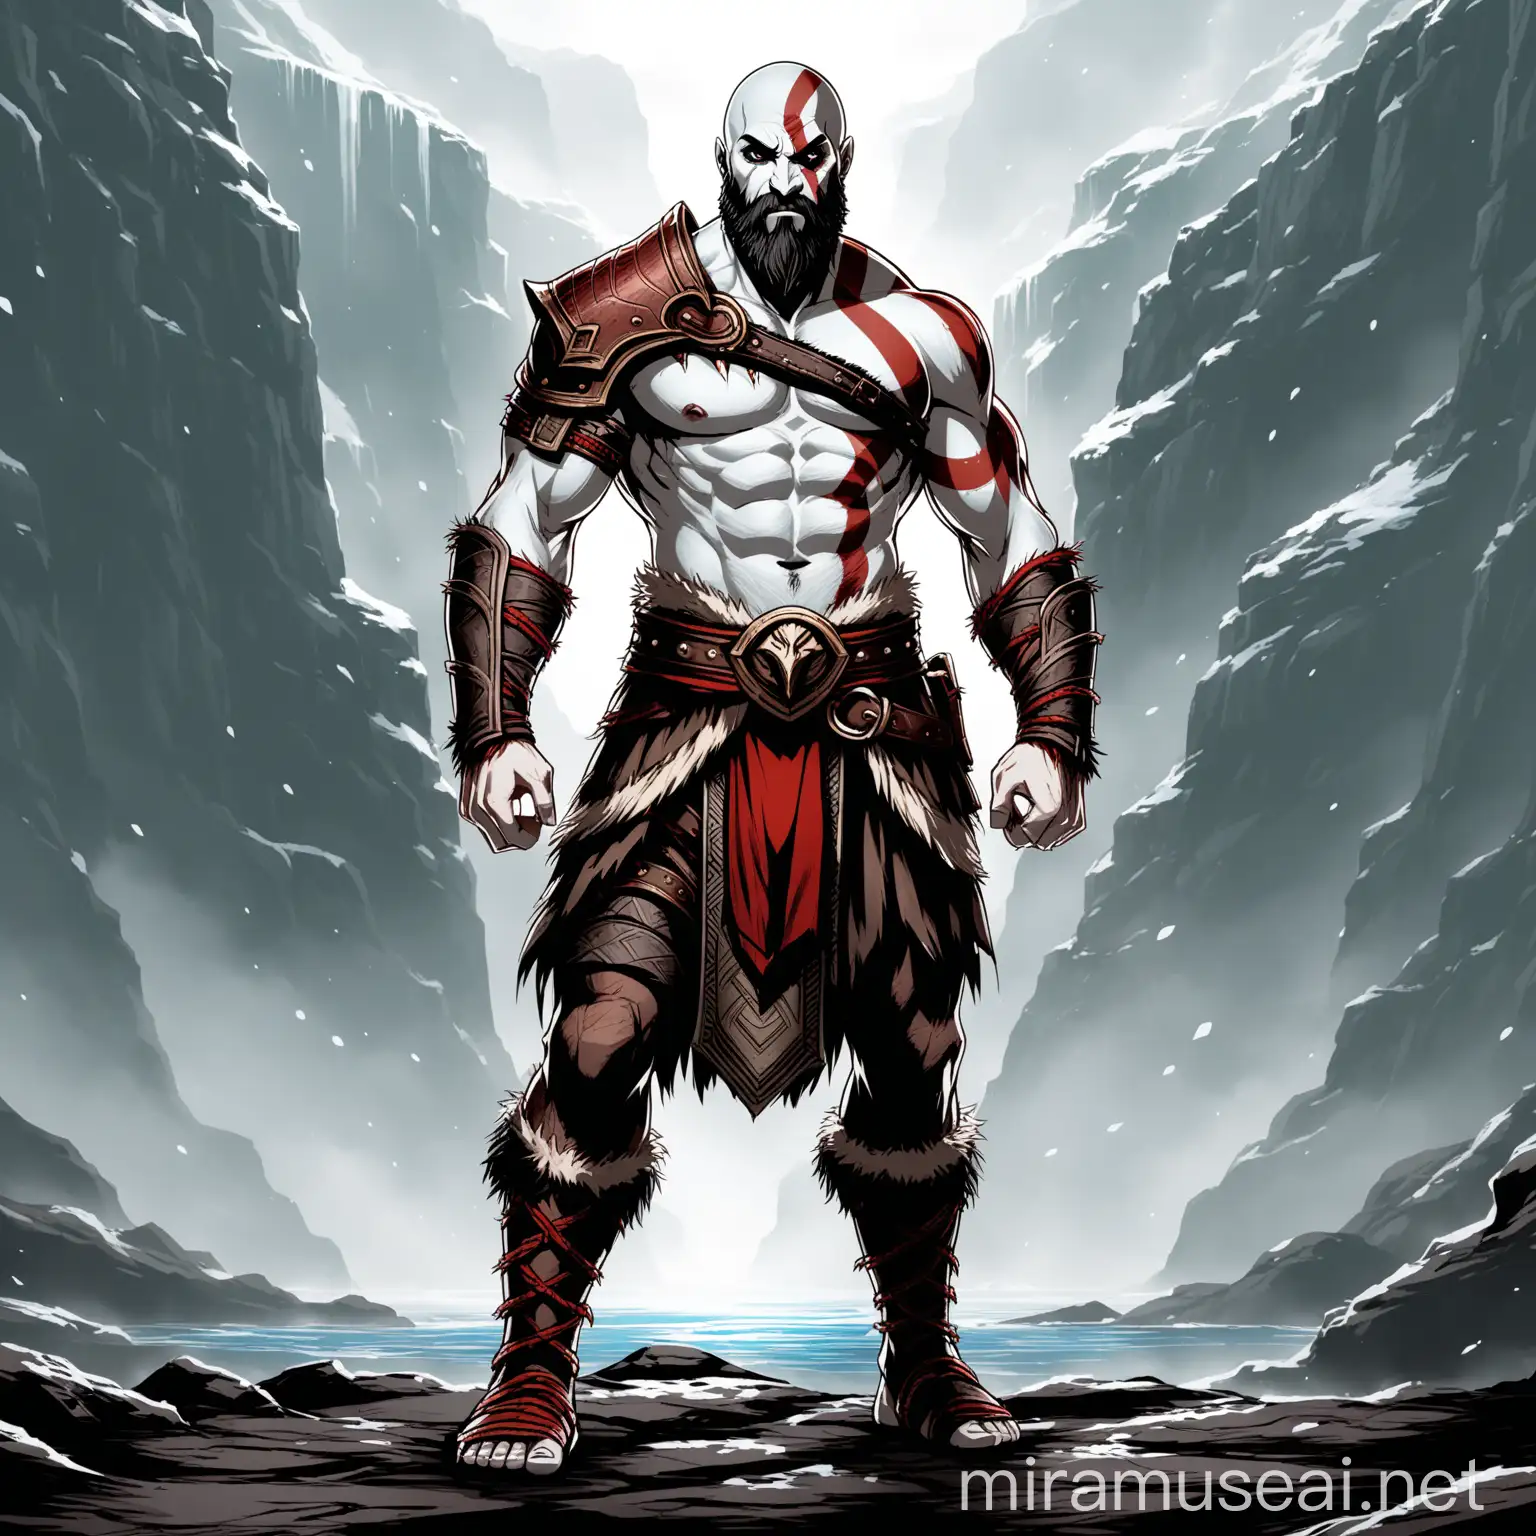 Kratos from God of War Ragnarok Intense Gaze of the God of War